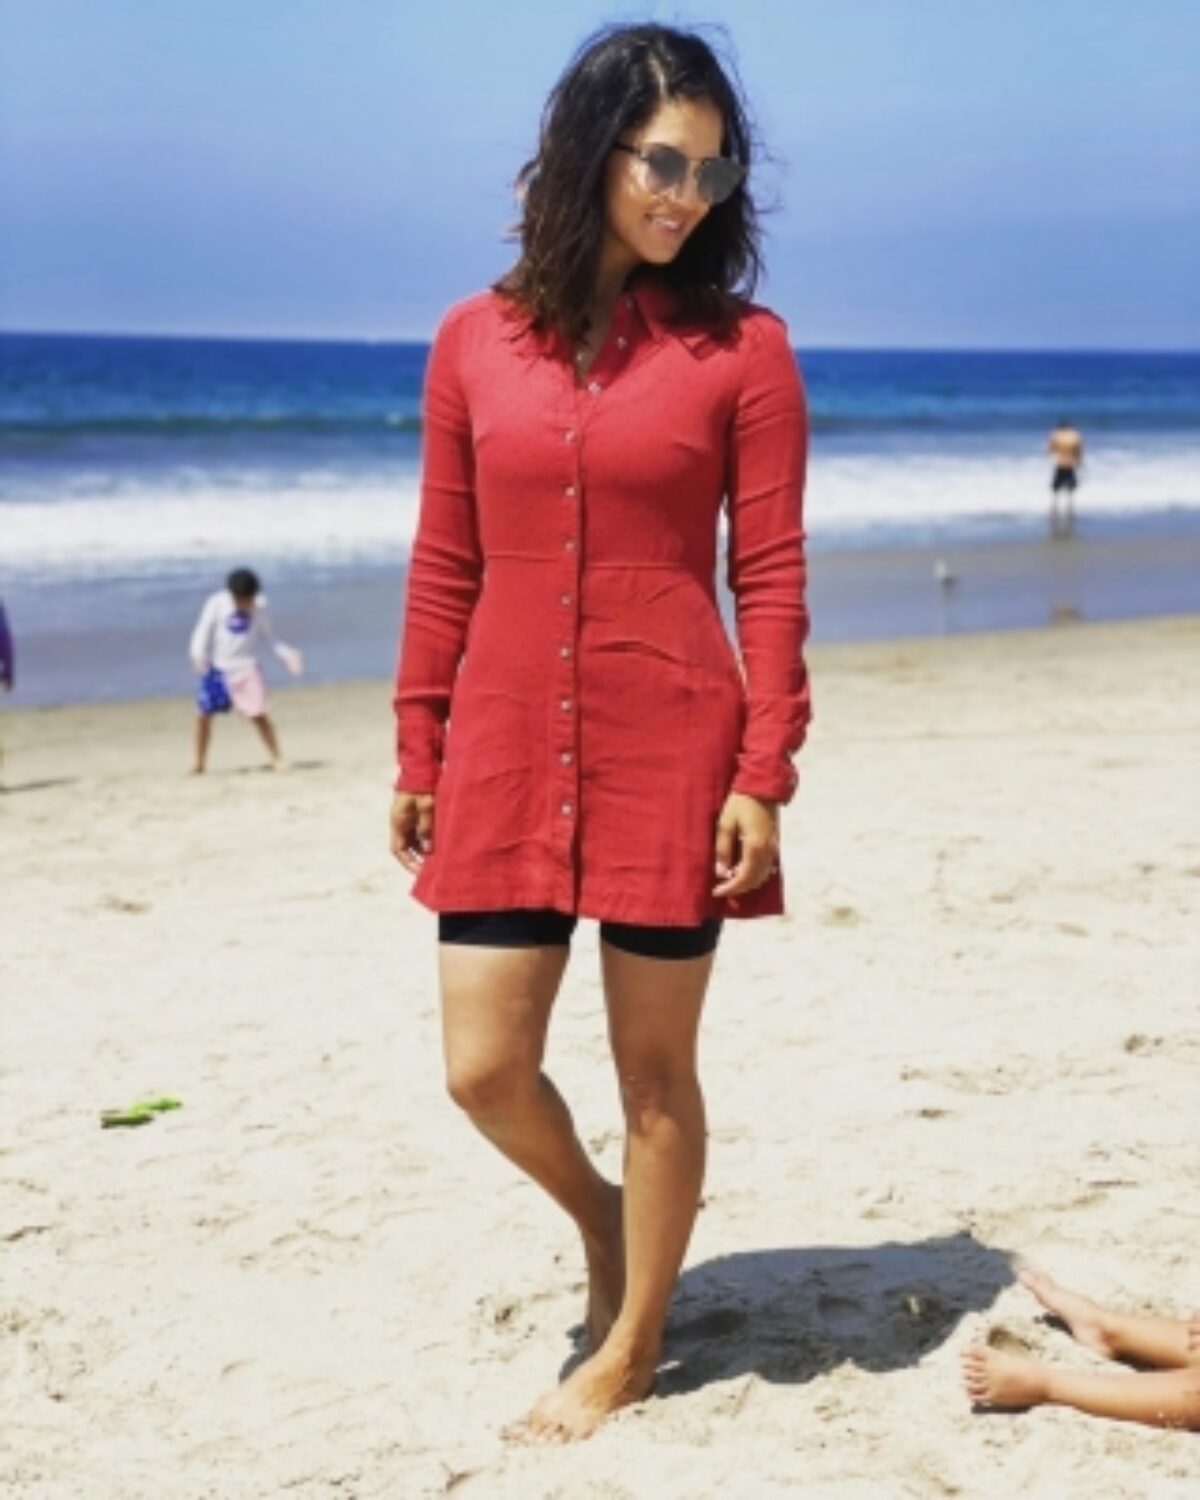 Sunny Leone enjoys beach day out